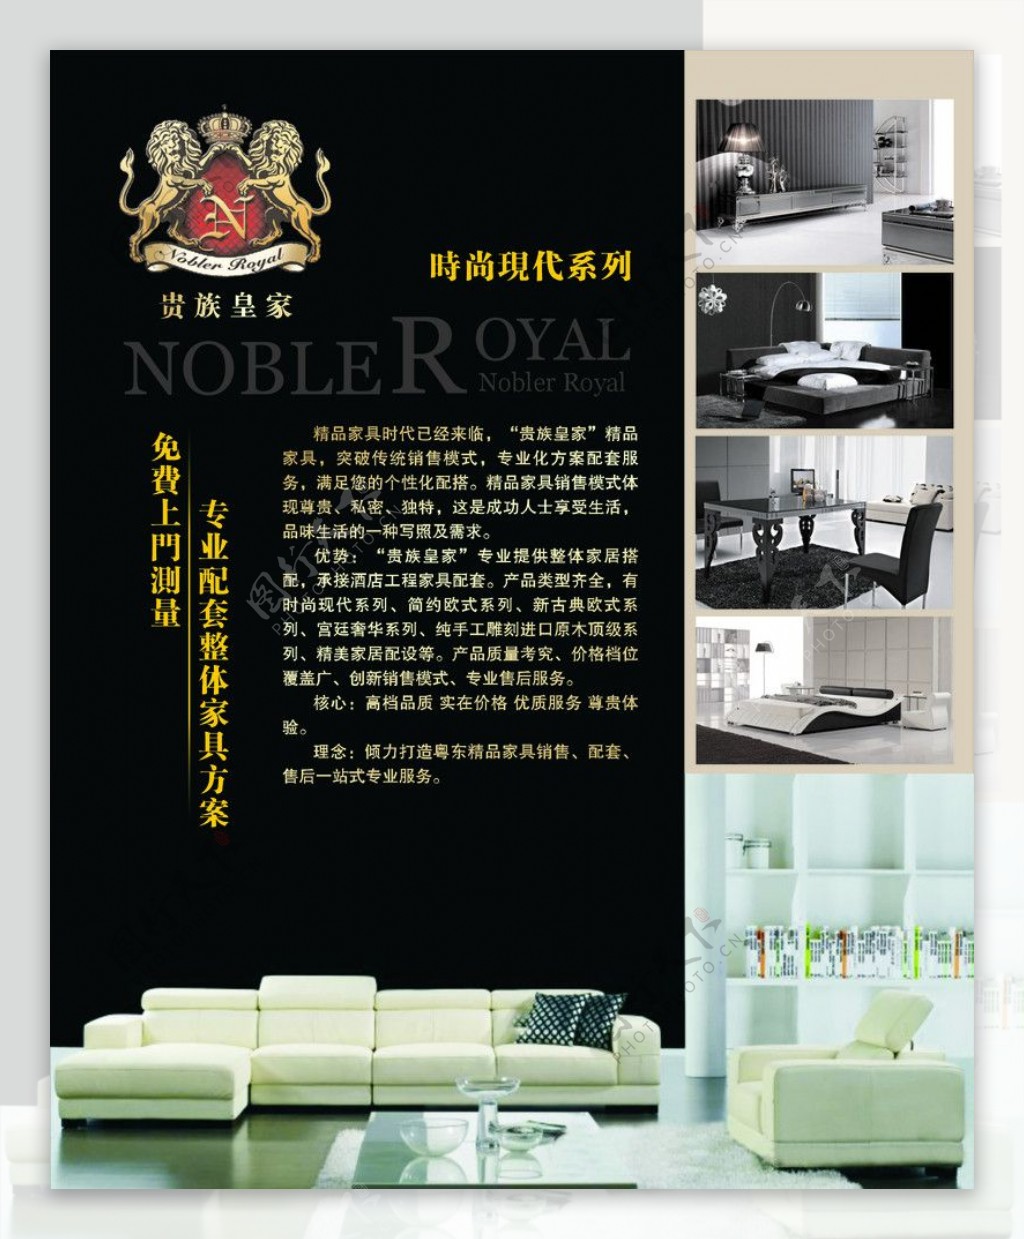 贵州皇家沙发现代时尚沙发广告投放图片